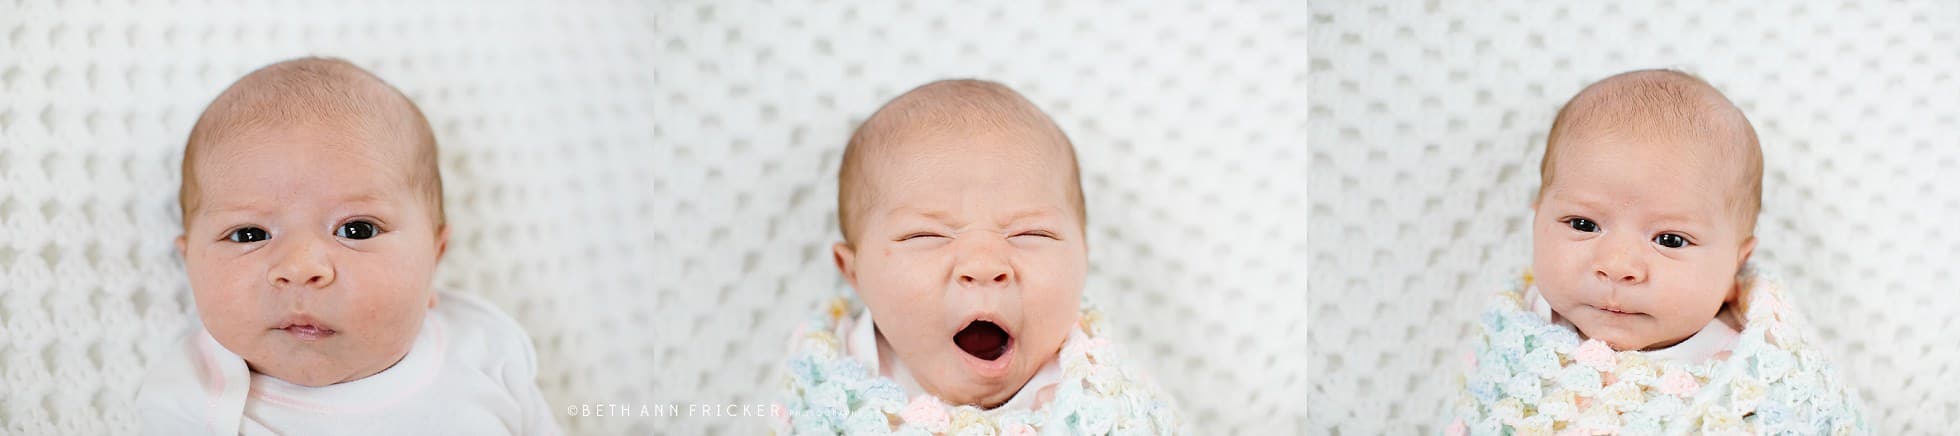 newborn baby girl yawning Boston Baby Photos